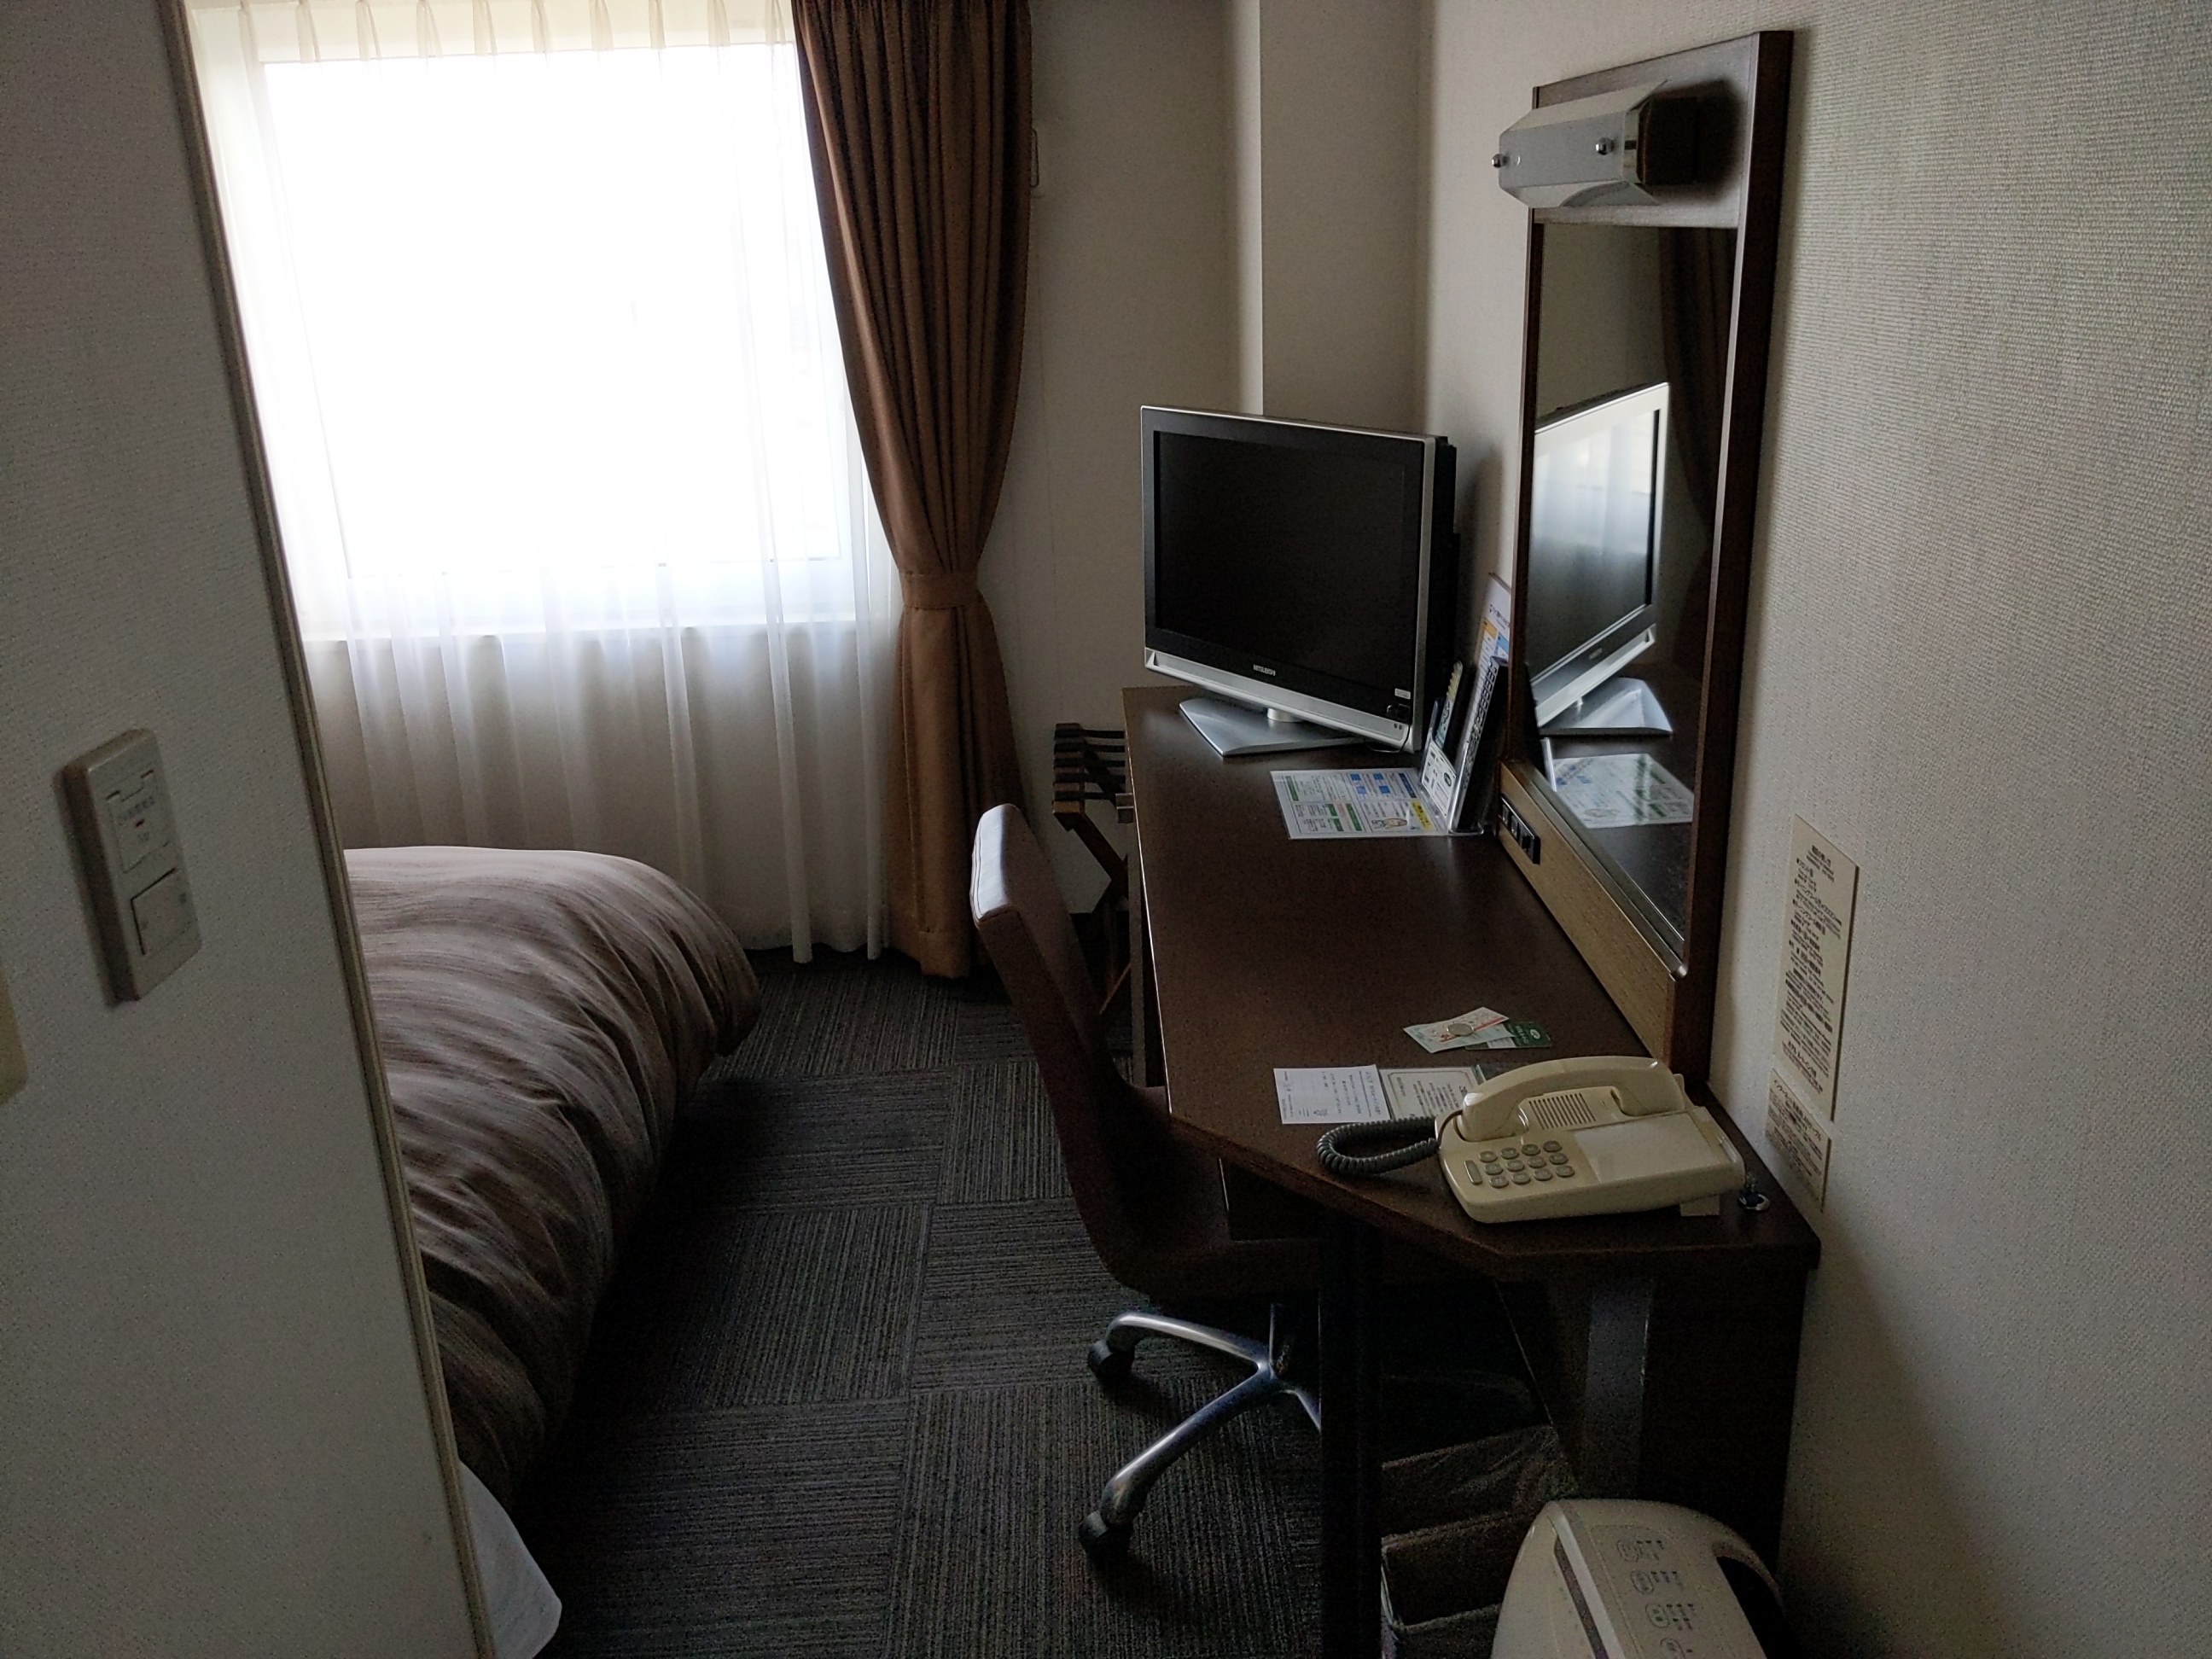 ホテルルートイン花巻に宿泊しました。